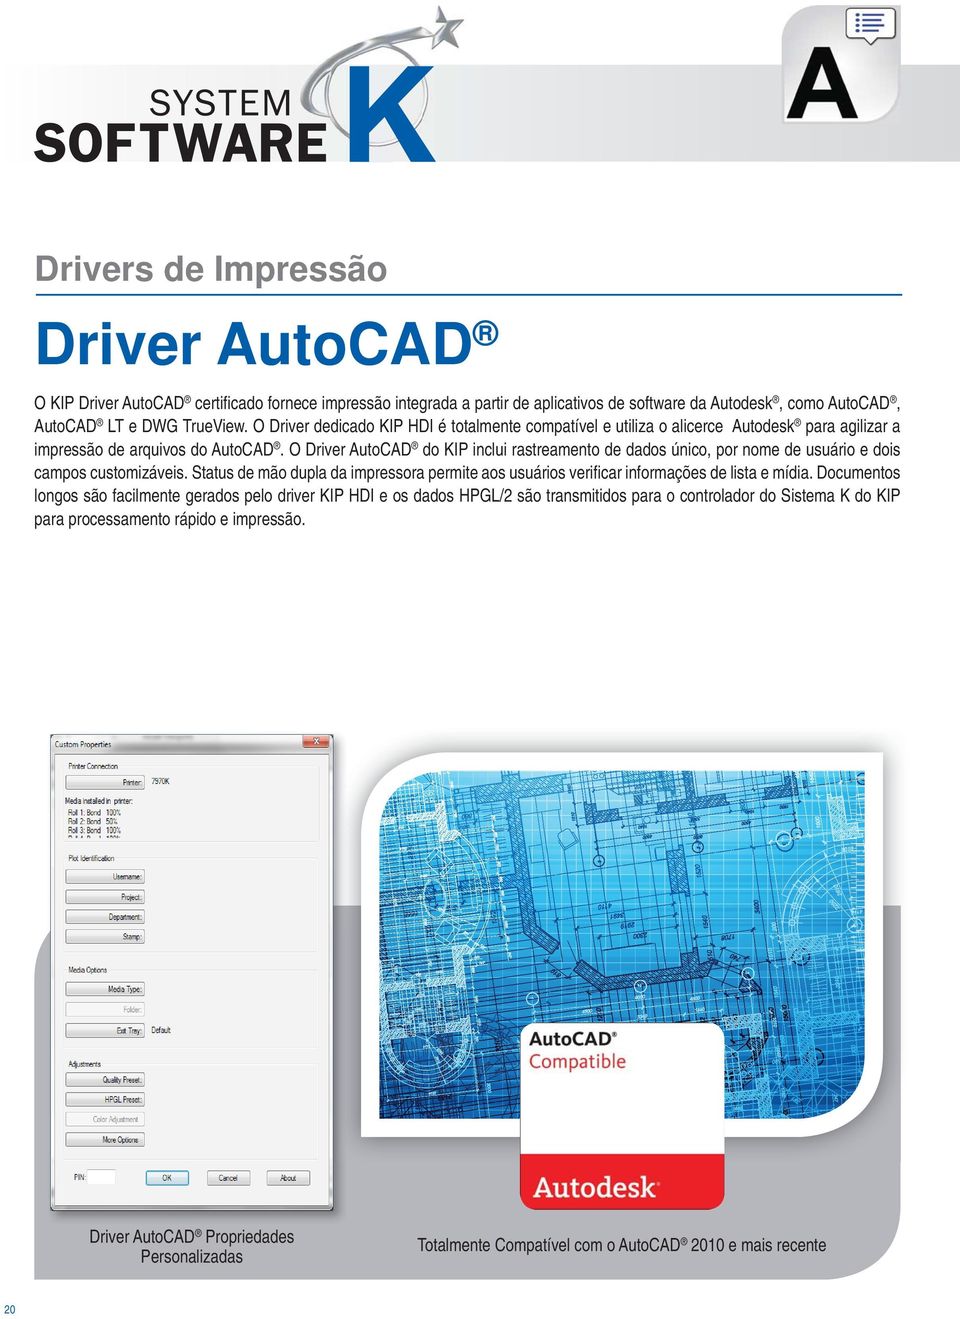 O Driver AutoCAD do KIP inclui rastreamento de dados único, por nome de usuário e dois campos customizáveis.